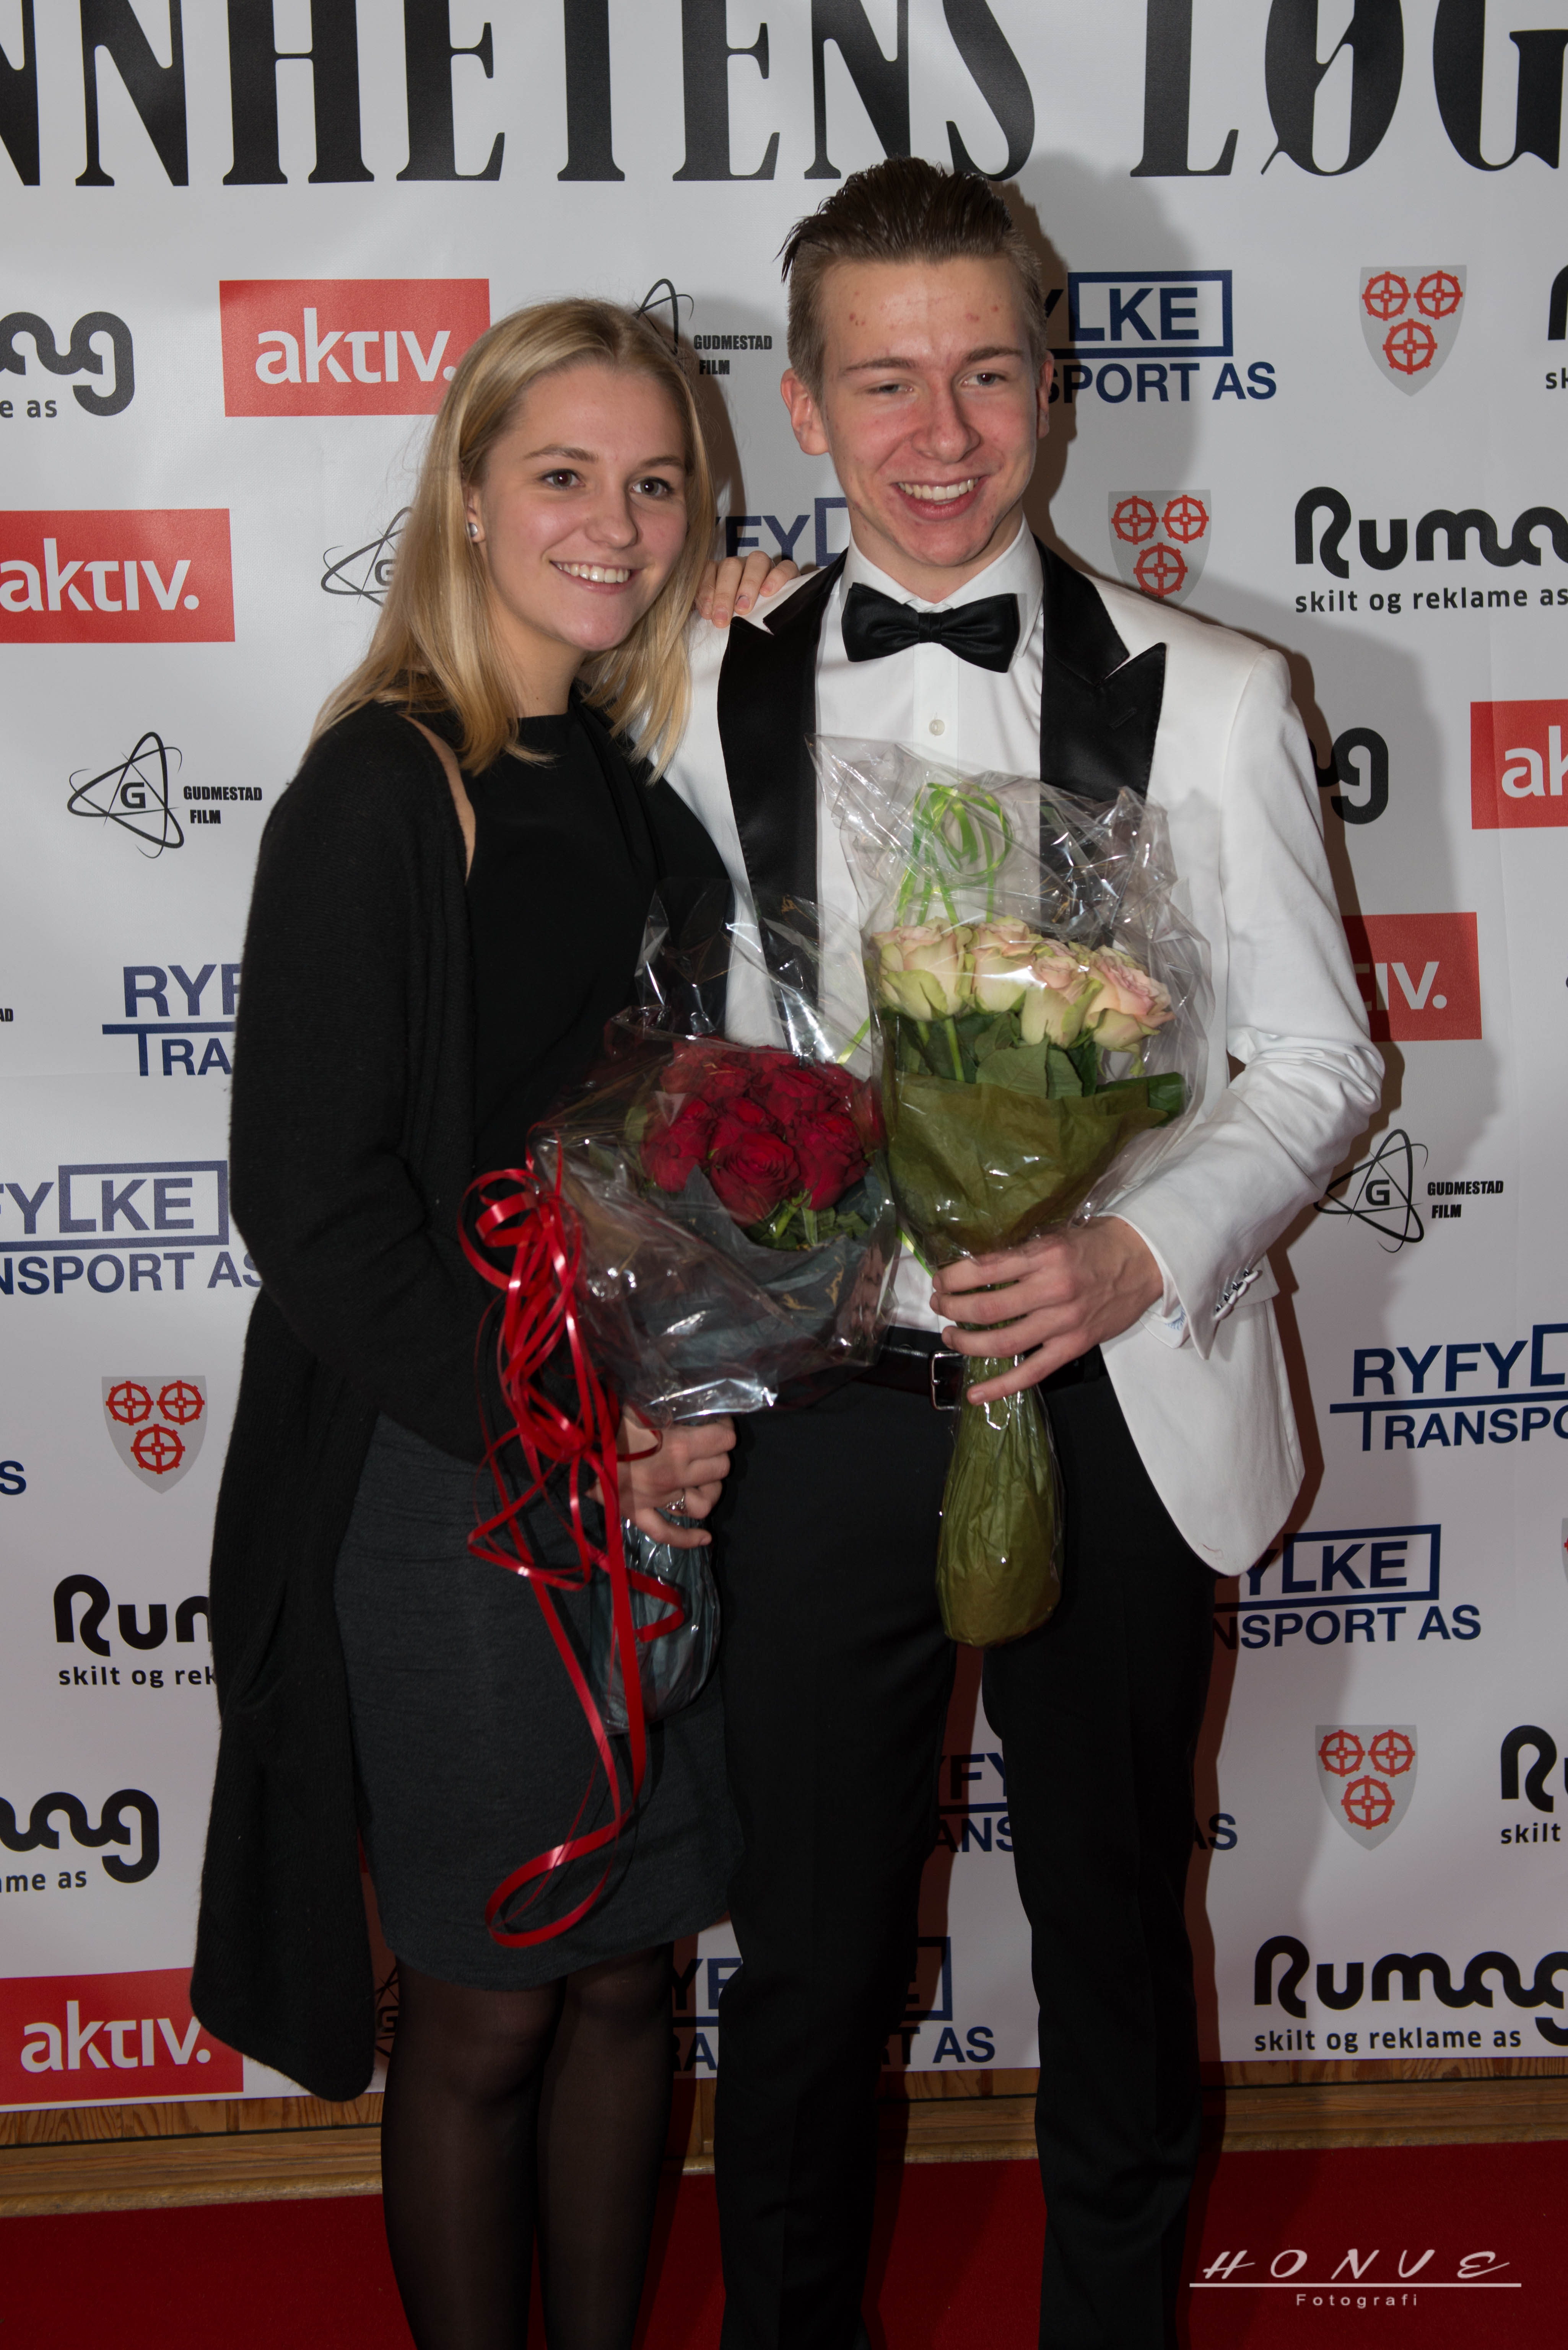 Tor Einar Gudmestad and Pernille Paulsen at the event of Sannhetens Løgn (2015)